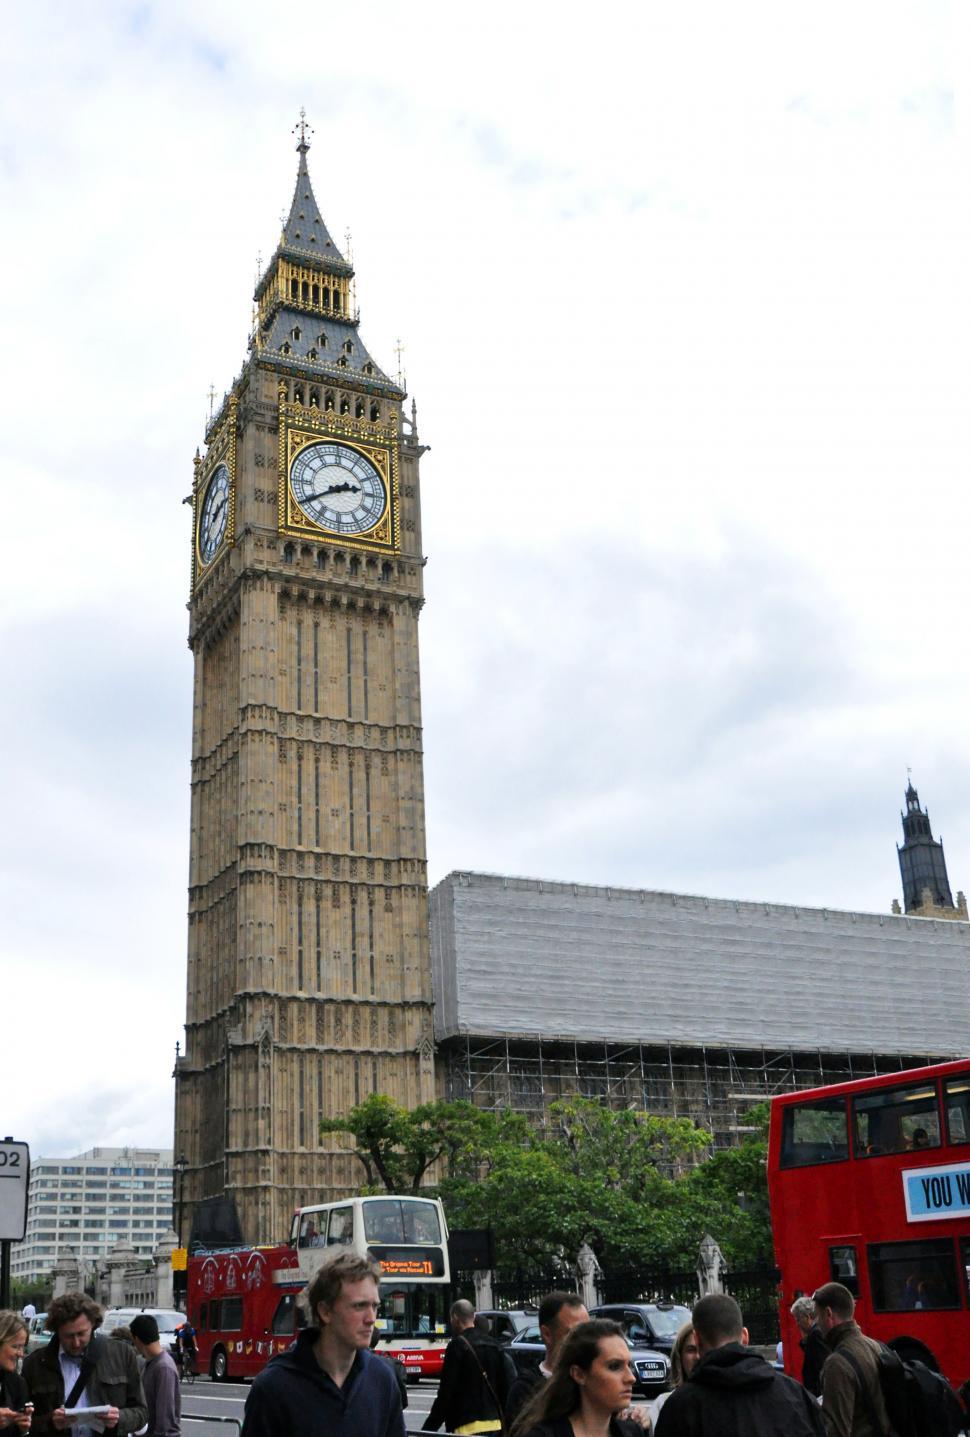 Free Image of London Big Ben & buses 